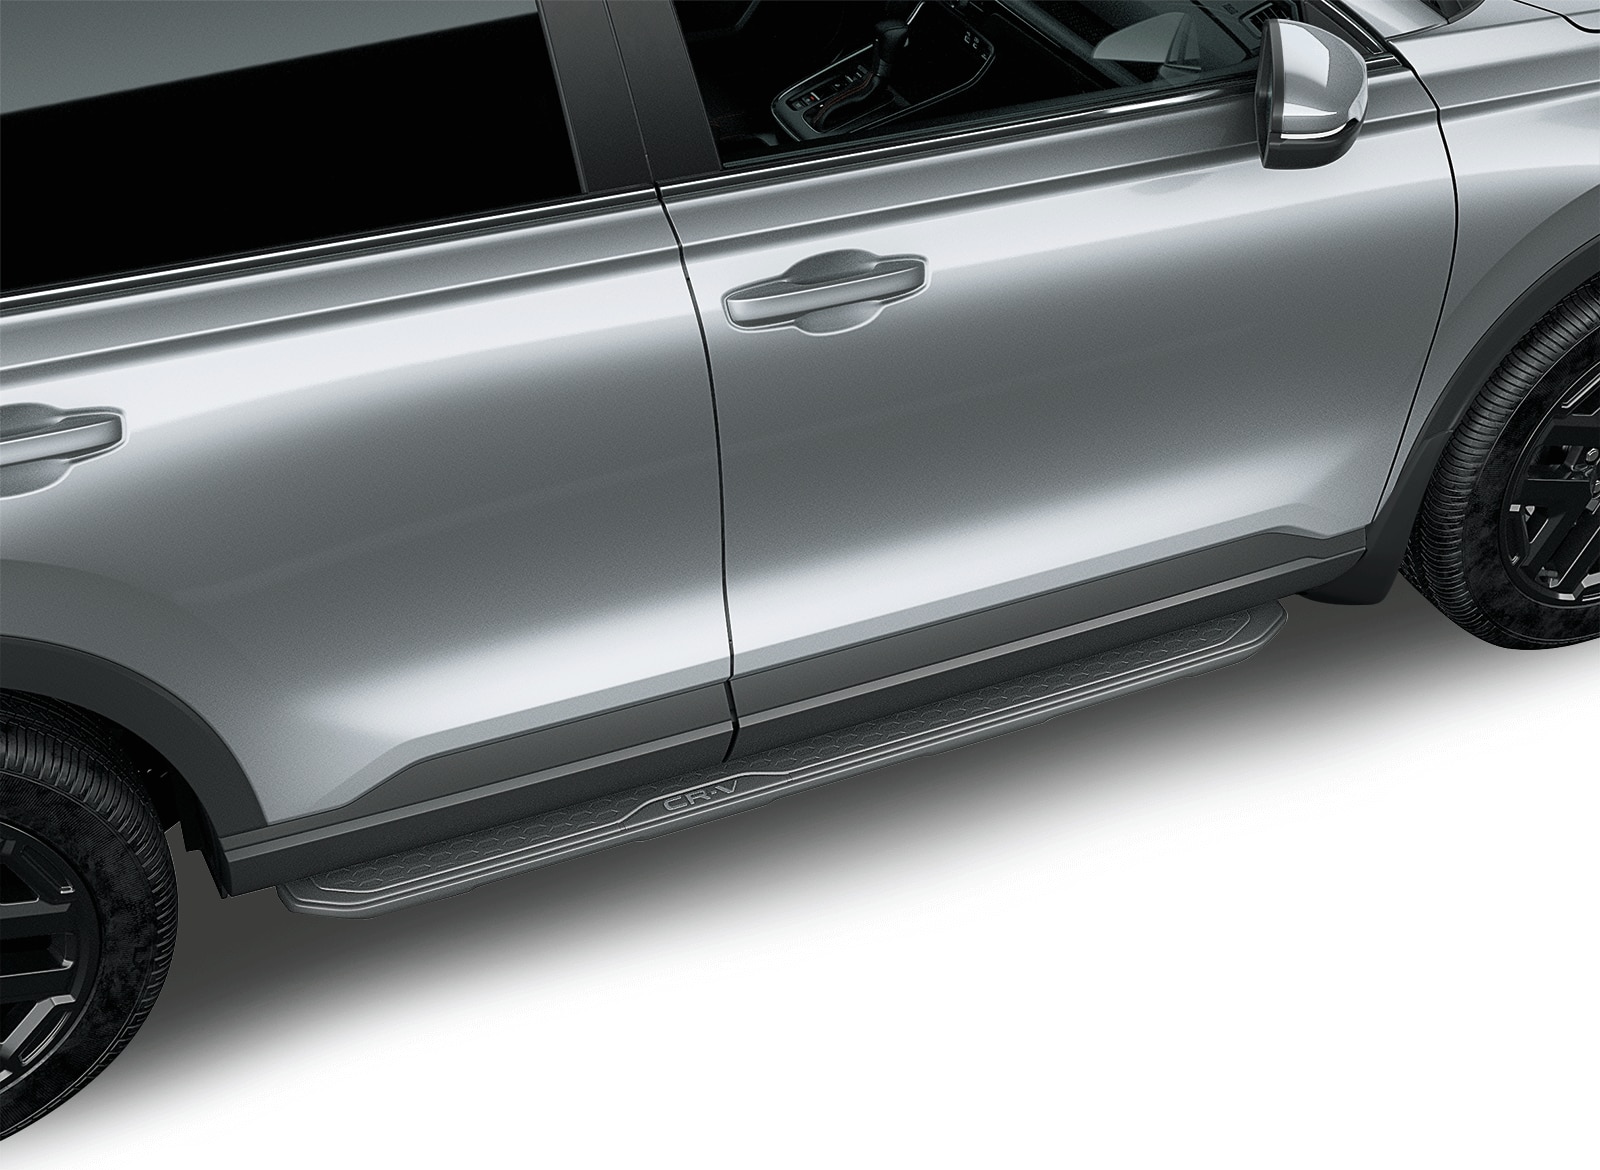 Cargifts Porte-clés en métal chromé pour Honda CR-V 